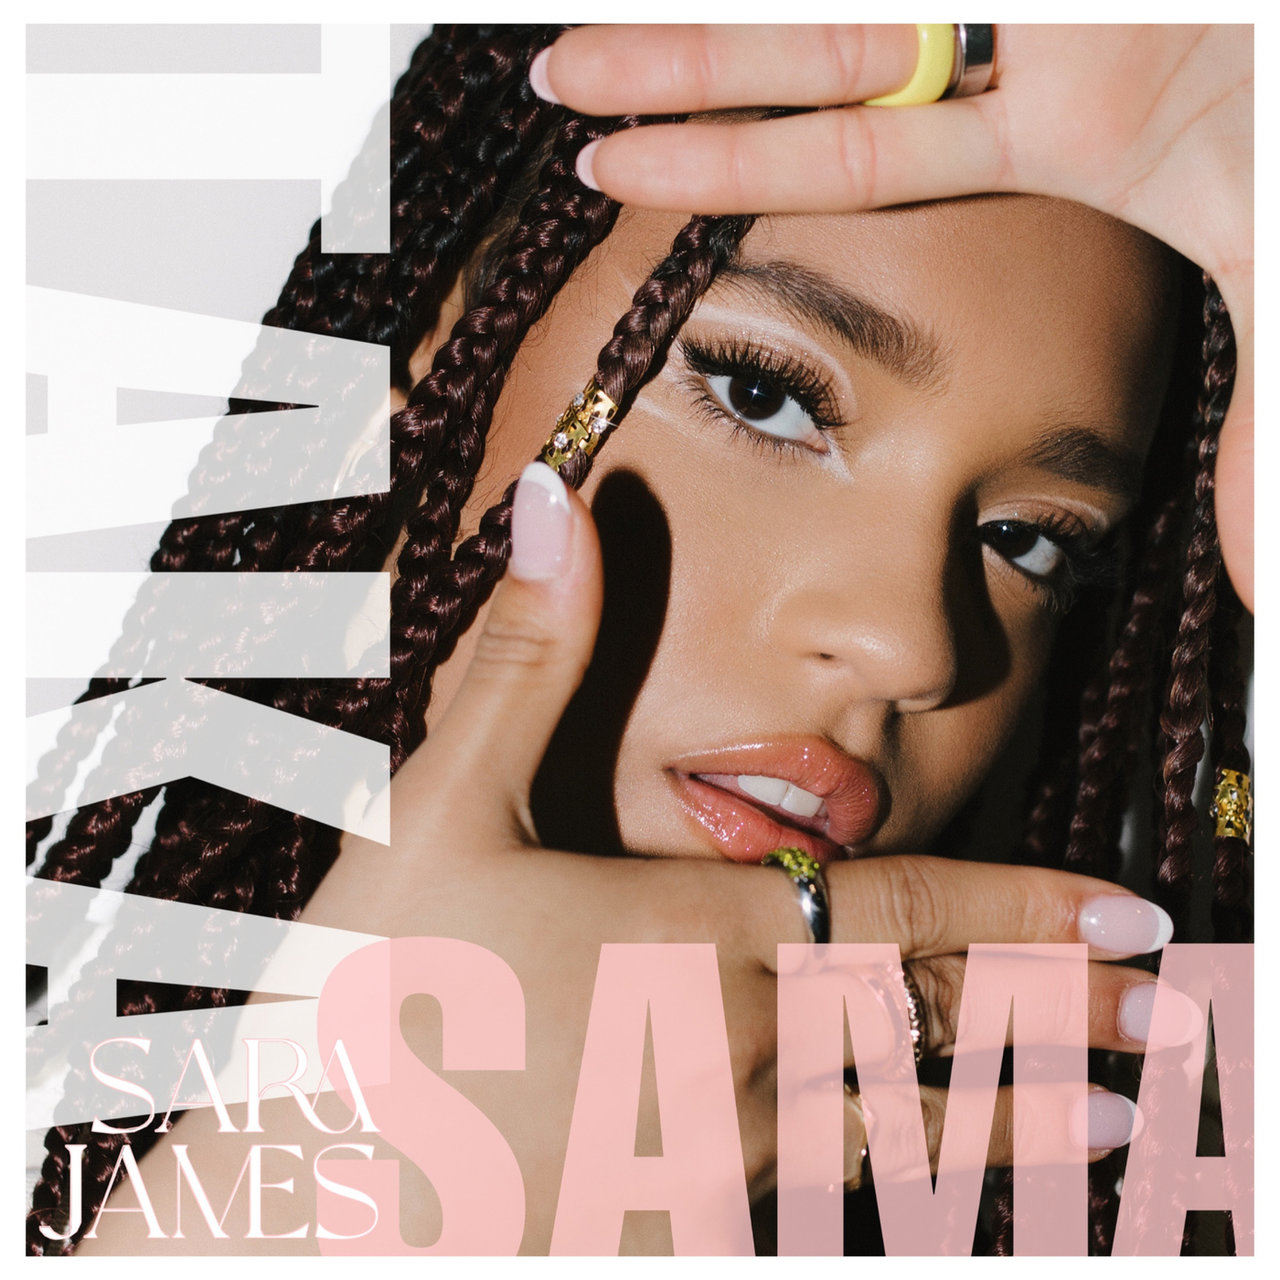 Sara James — Taka Sama cover artwork